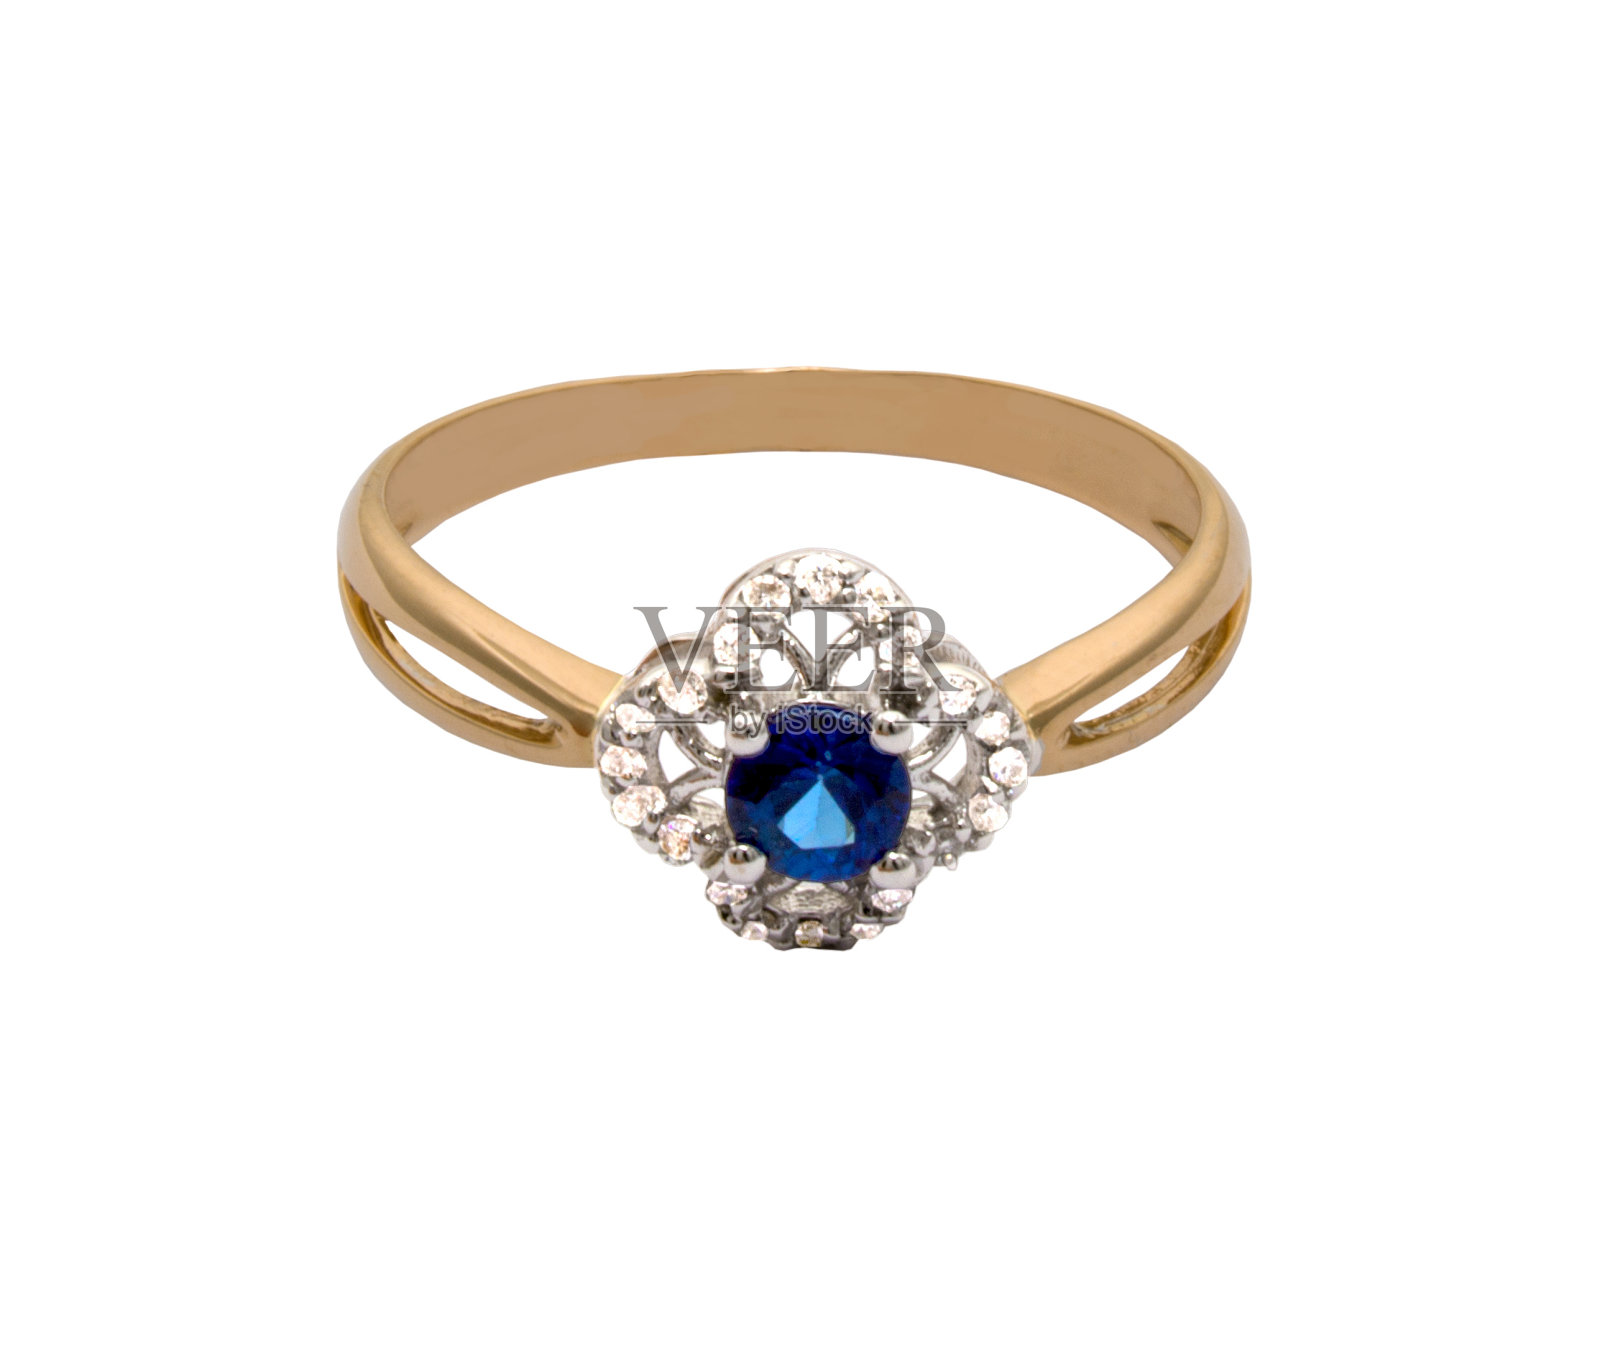 镶有深蓝宝石-蓝宝石和少量钻石的金戒指照片摄影图片